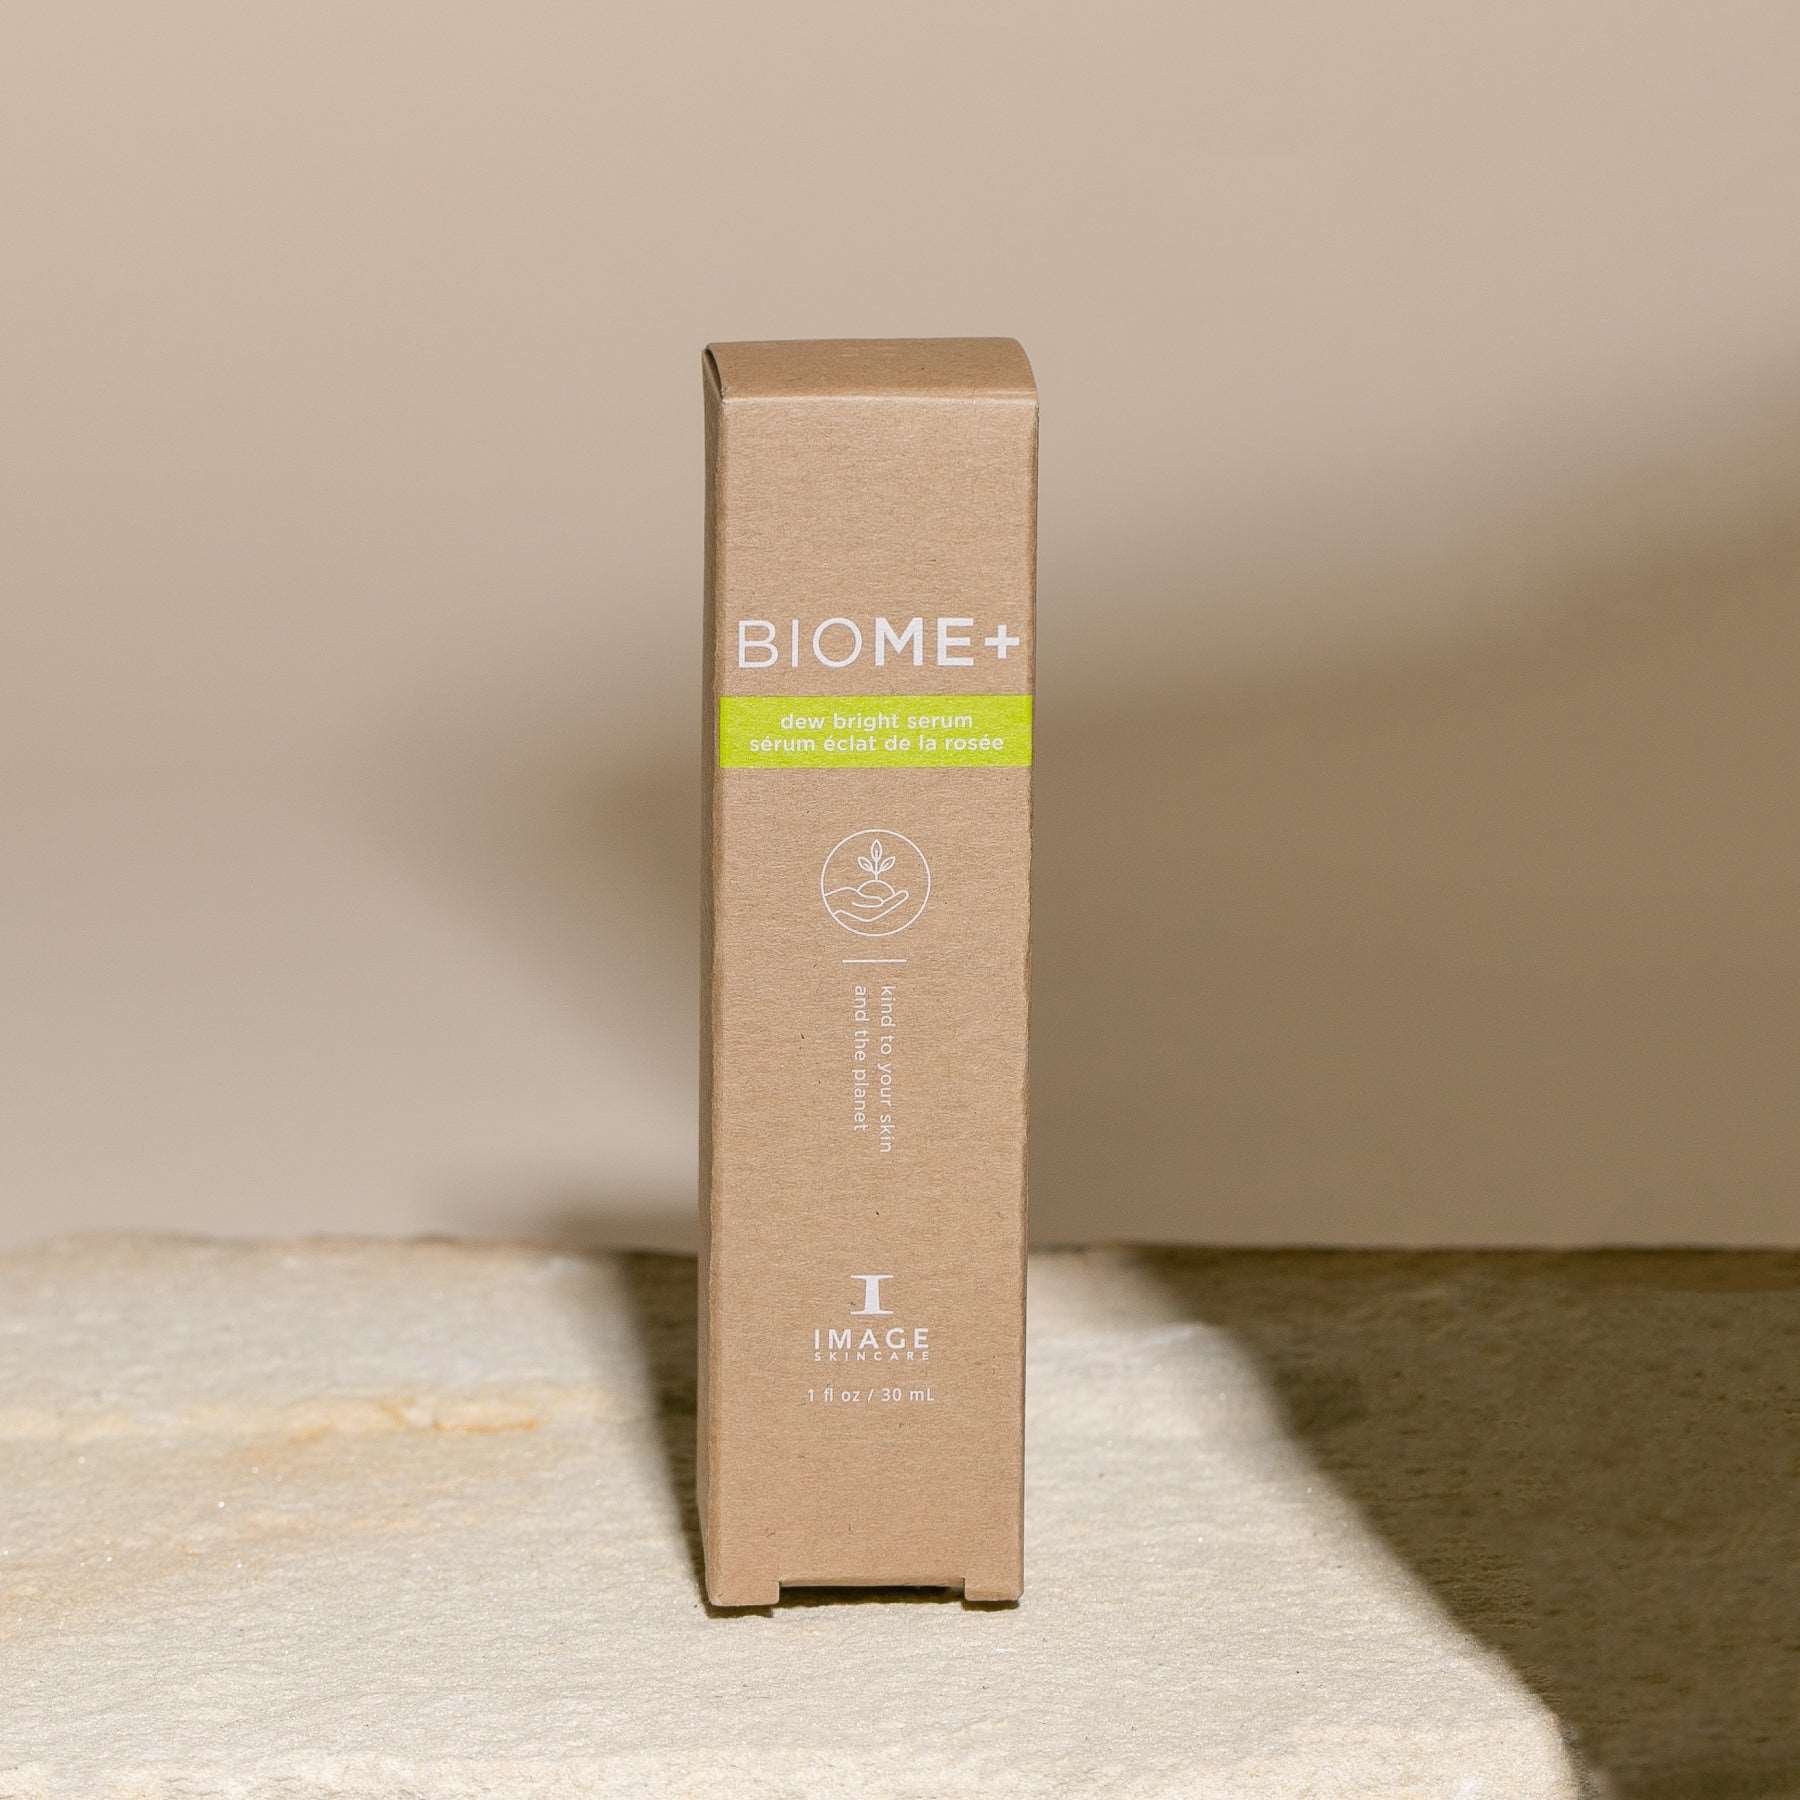 Biome+ Dew Bright Serum Image Skincare